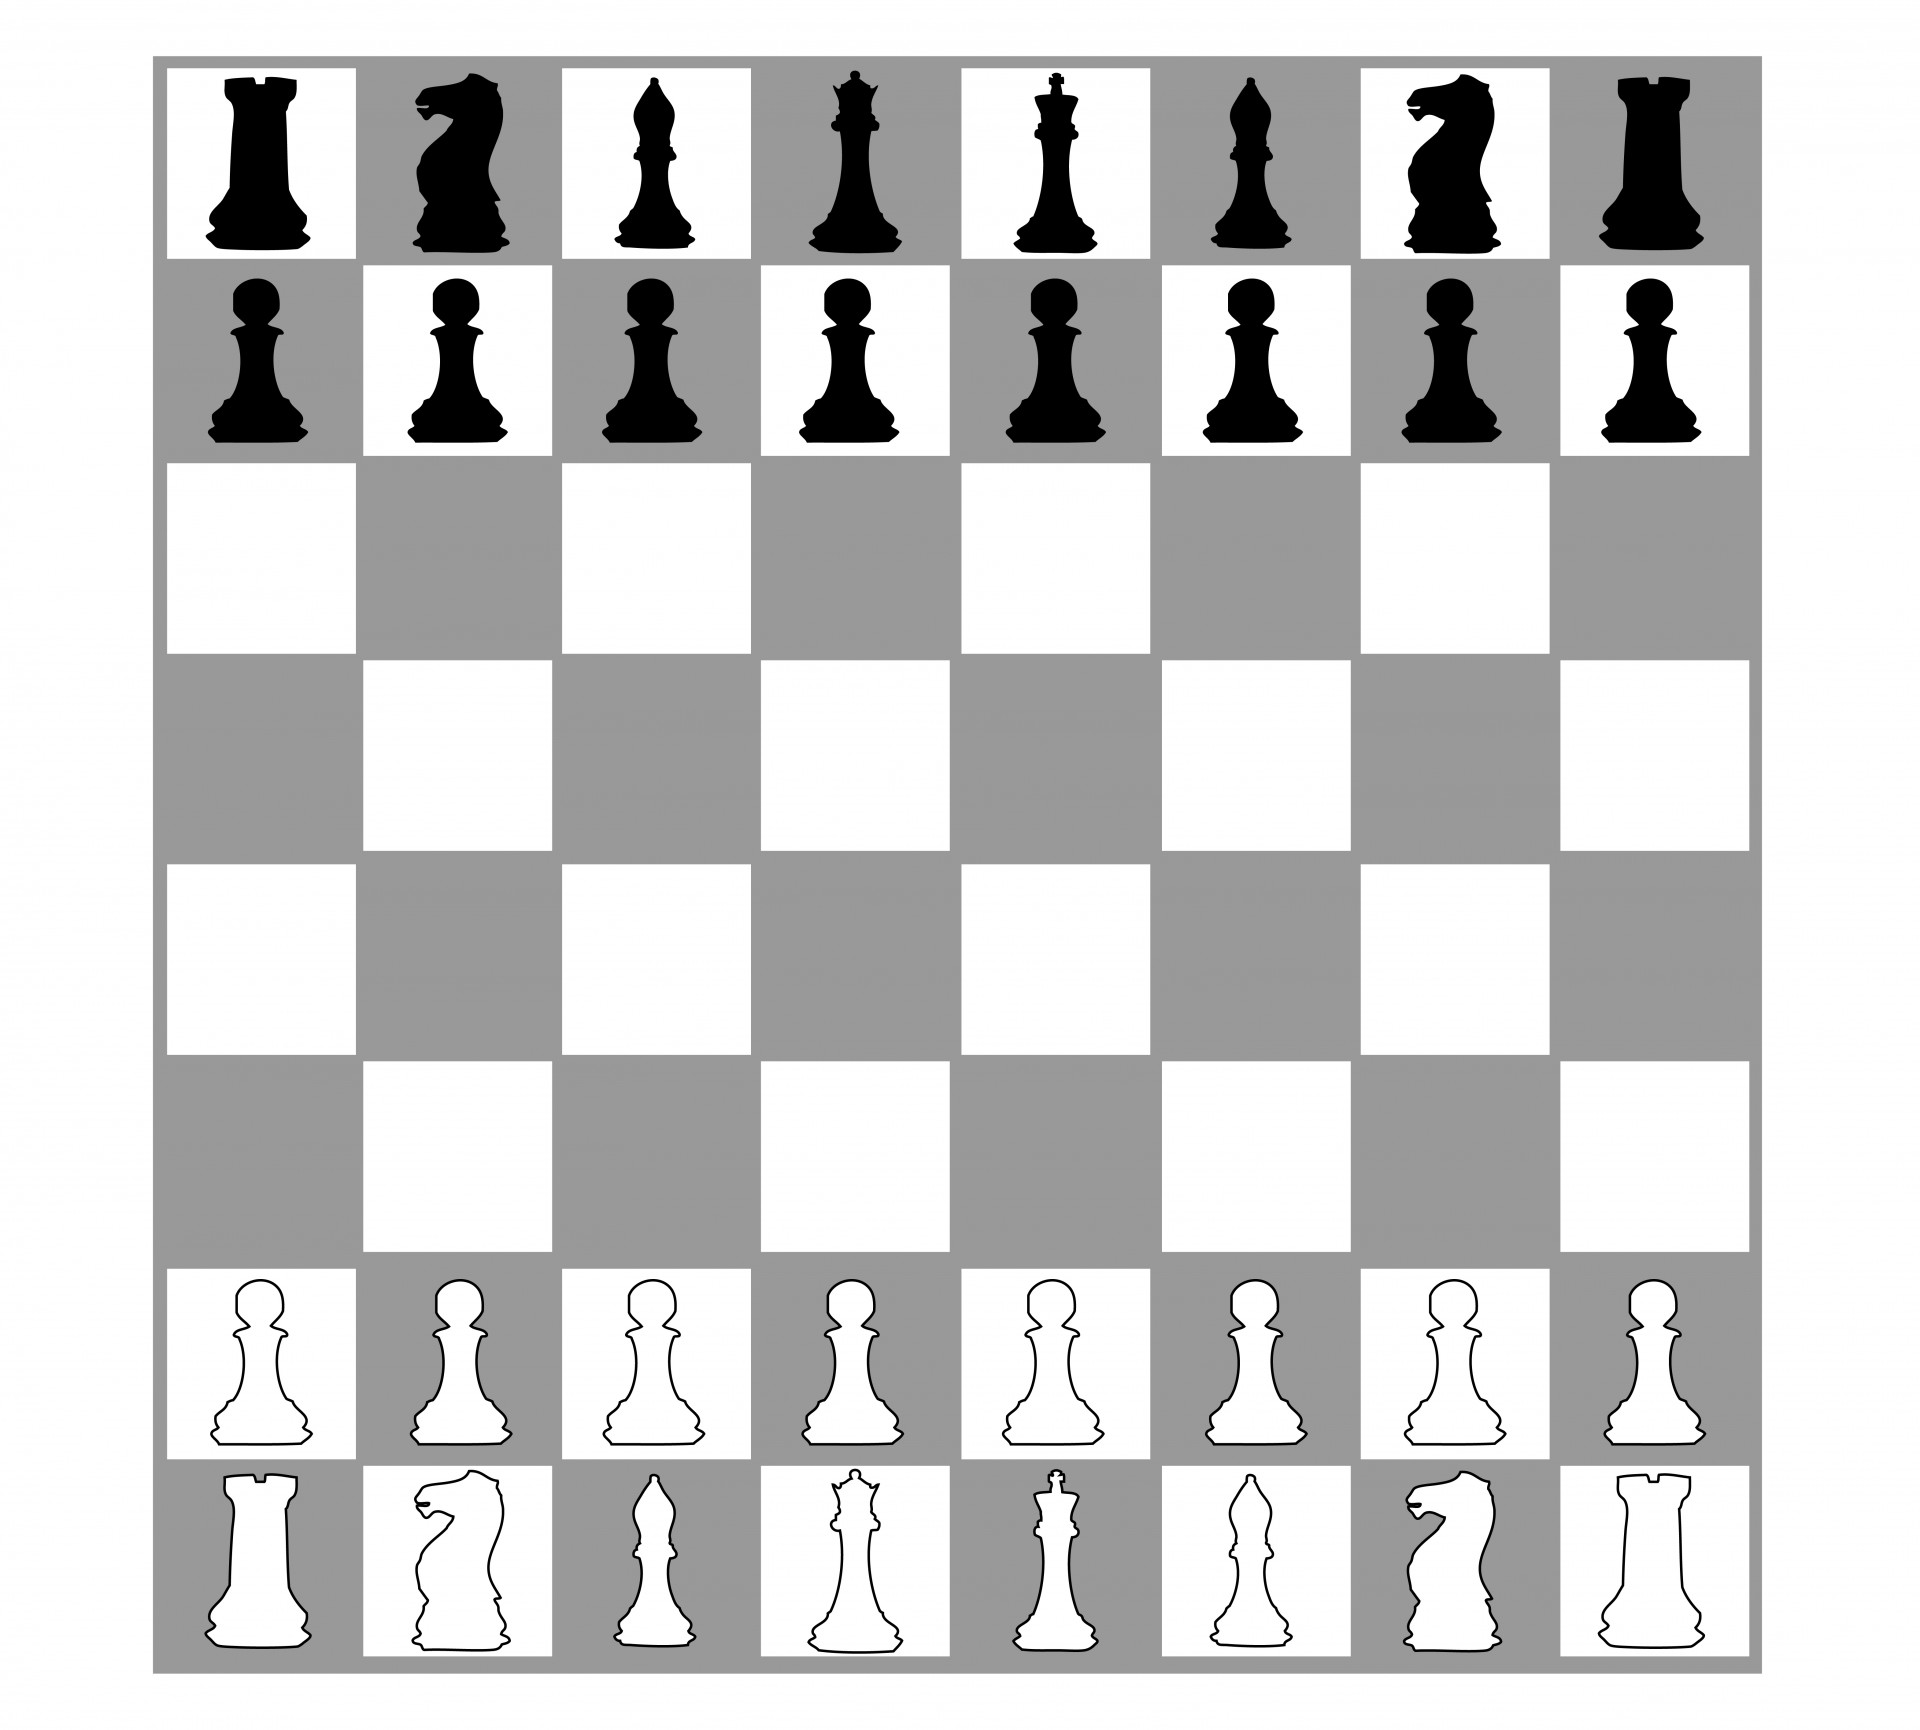 Šachmatai,  Šachmatai & Nbsp,  Lenta,  Vienetai,  Šachmatai & Nbsp,  Vienetai,  Šachmatai & Nbsp,  Nustatyti,  Nustatyti,  Lenta